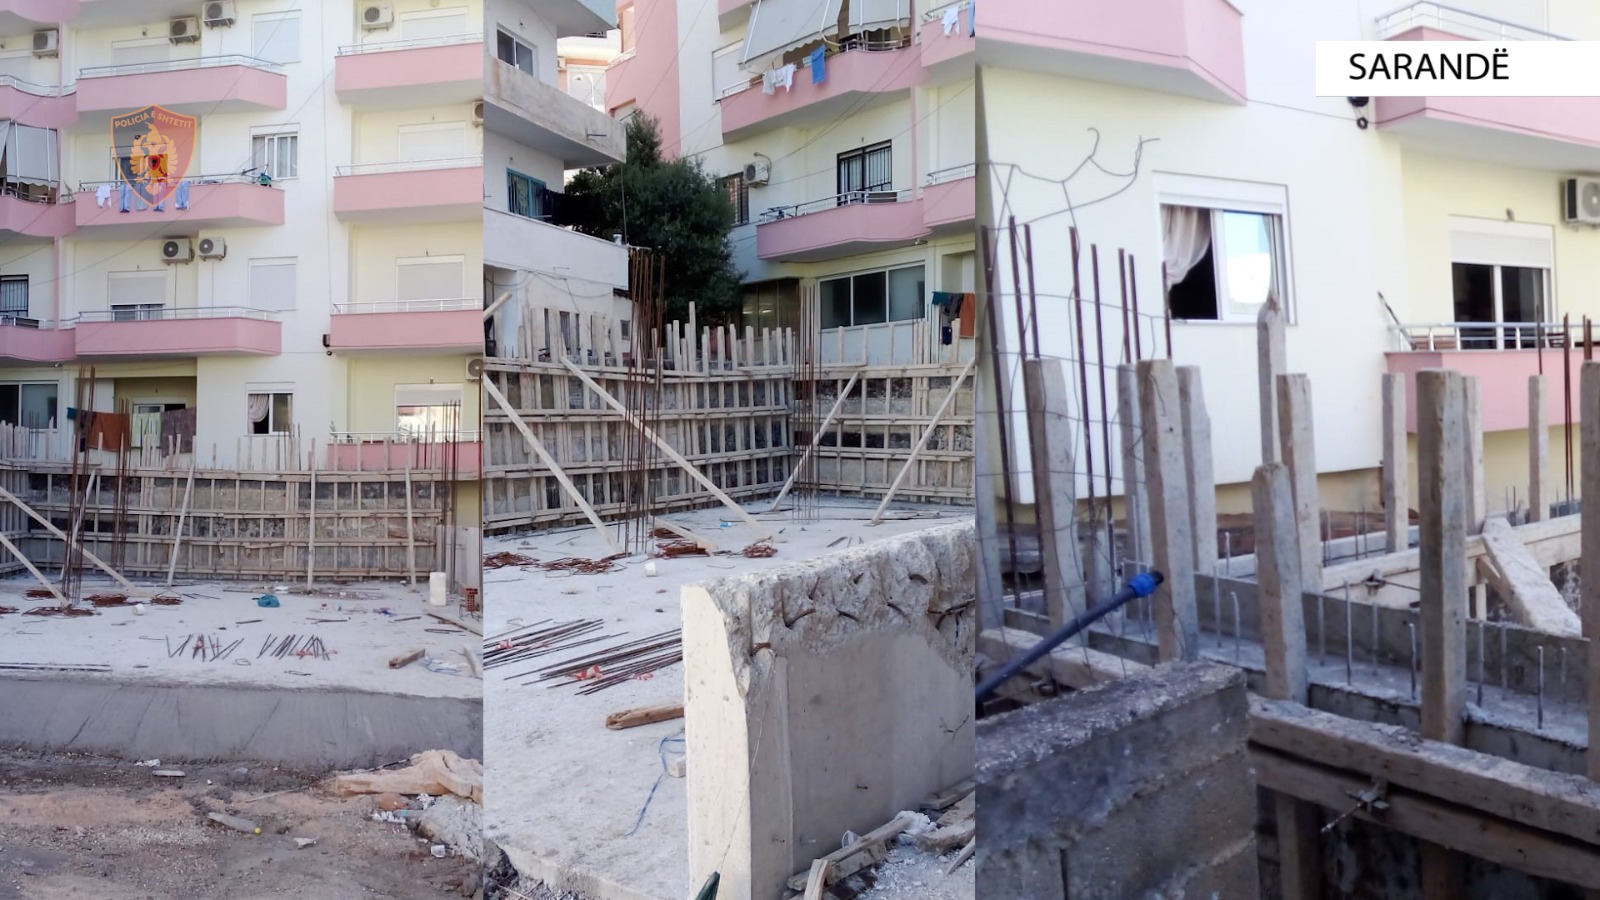 Policia prangos një banor të Sarandës, akuzohet për ndërtim pa leje